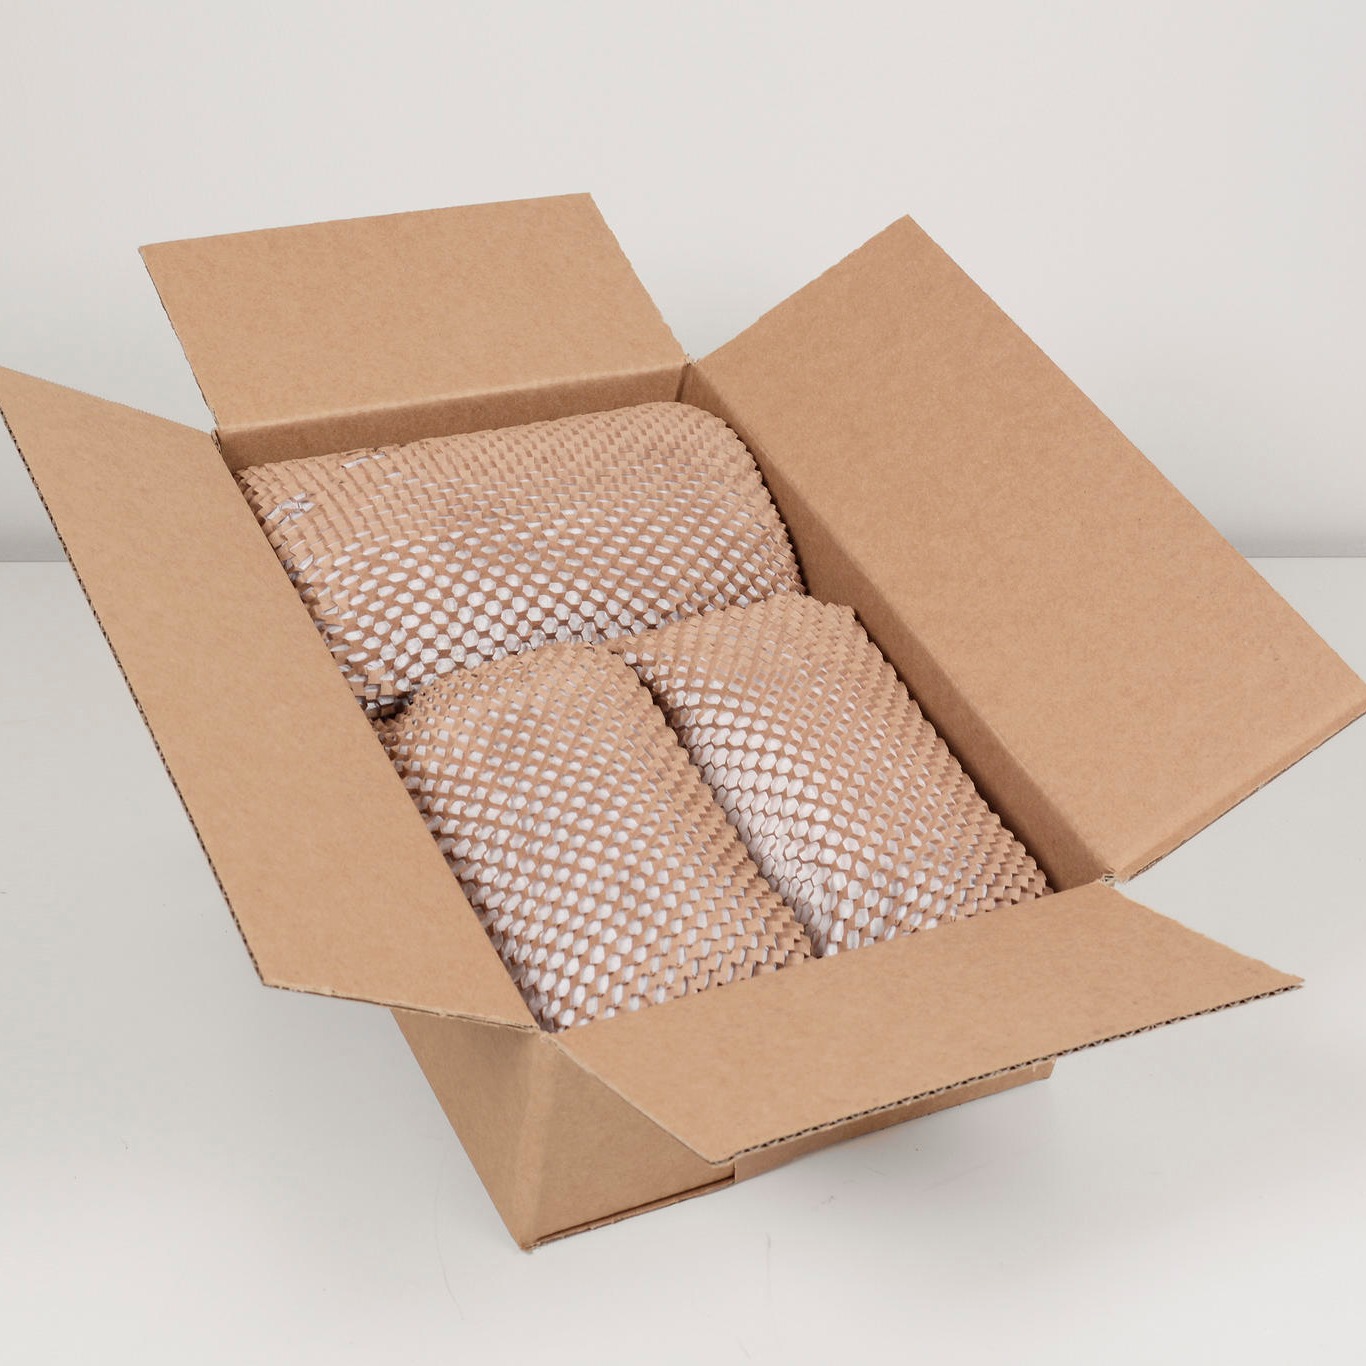 拉网纸包装 缓冲蜂巢纸 蜂窝网格纸 网状环保 包裹保护 抖音同款礼品纸